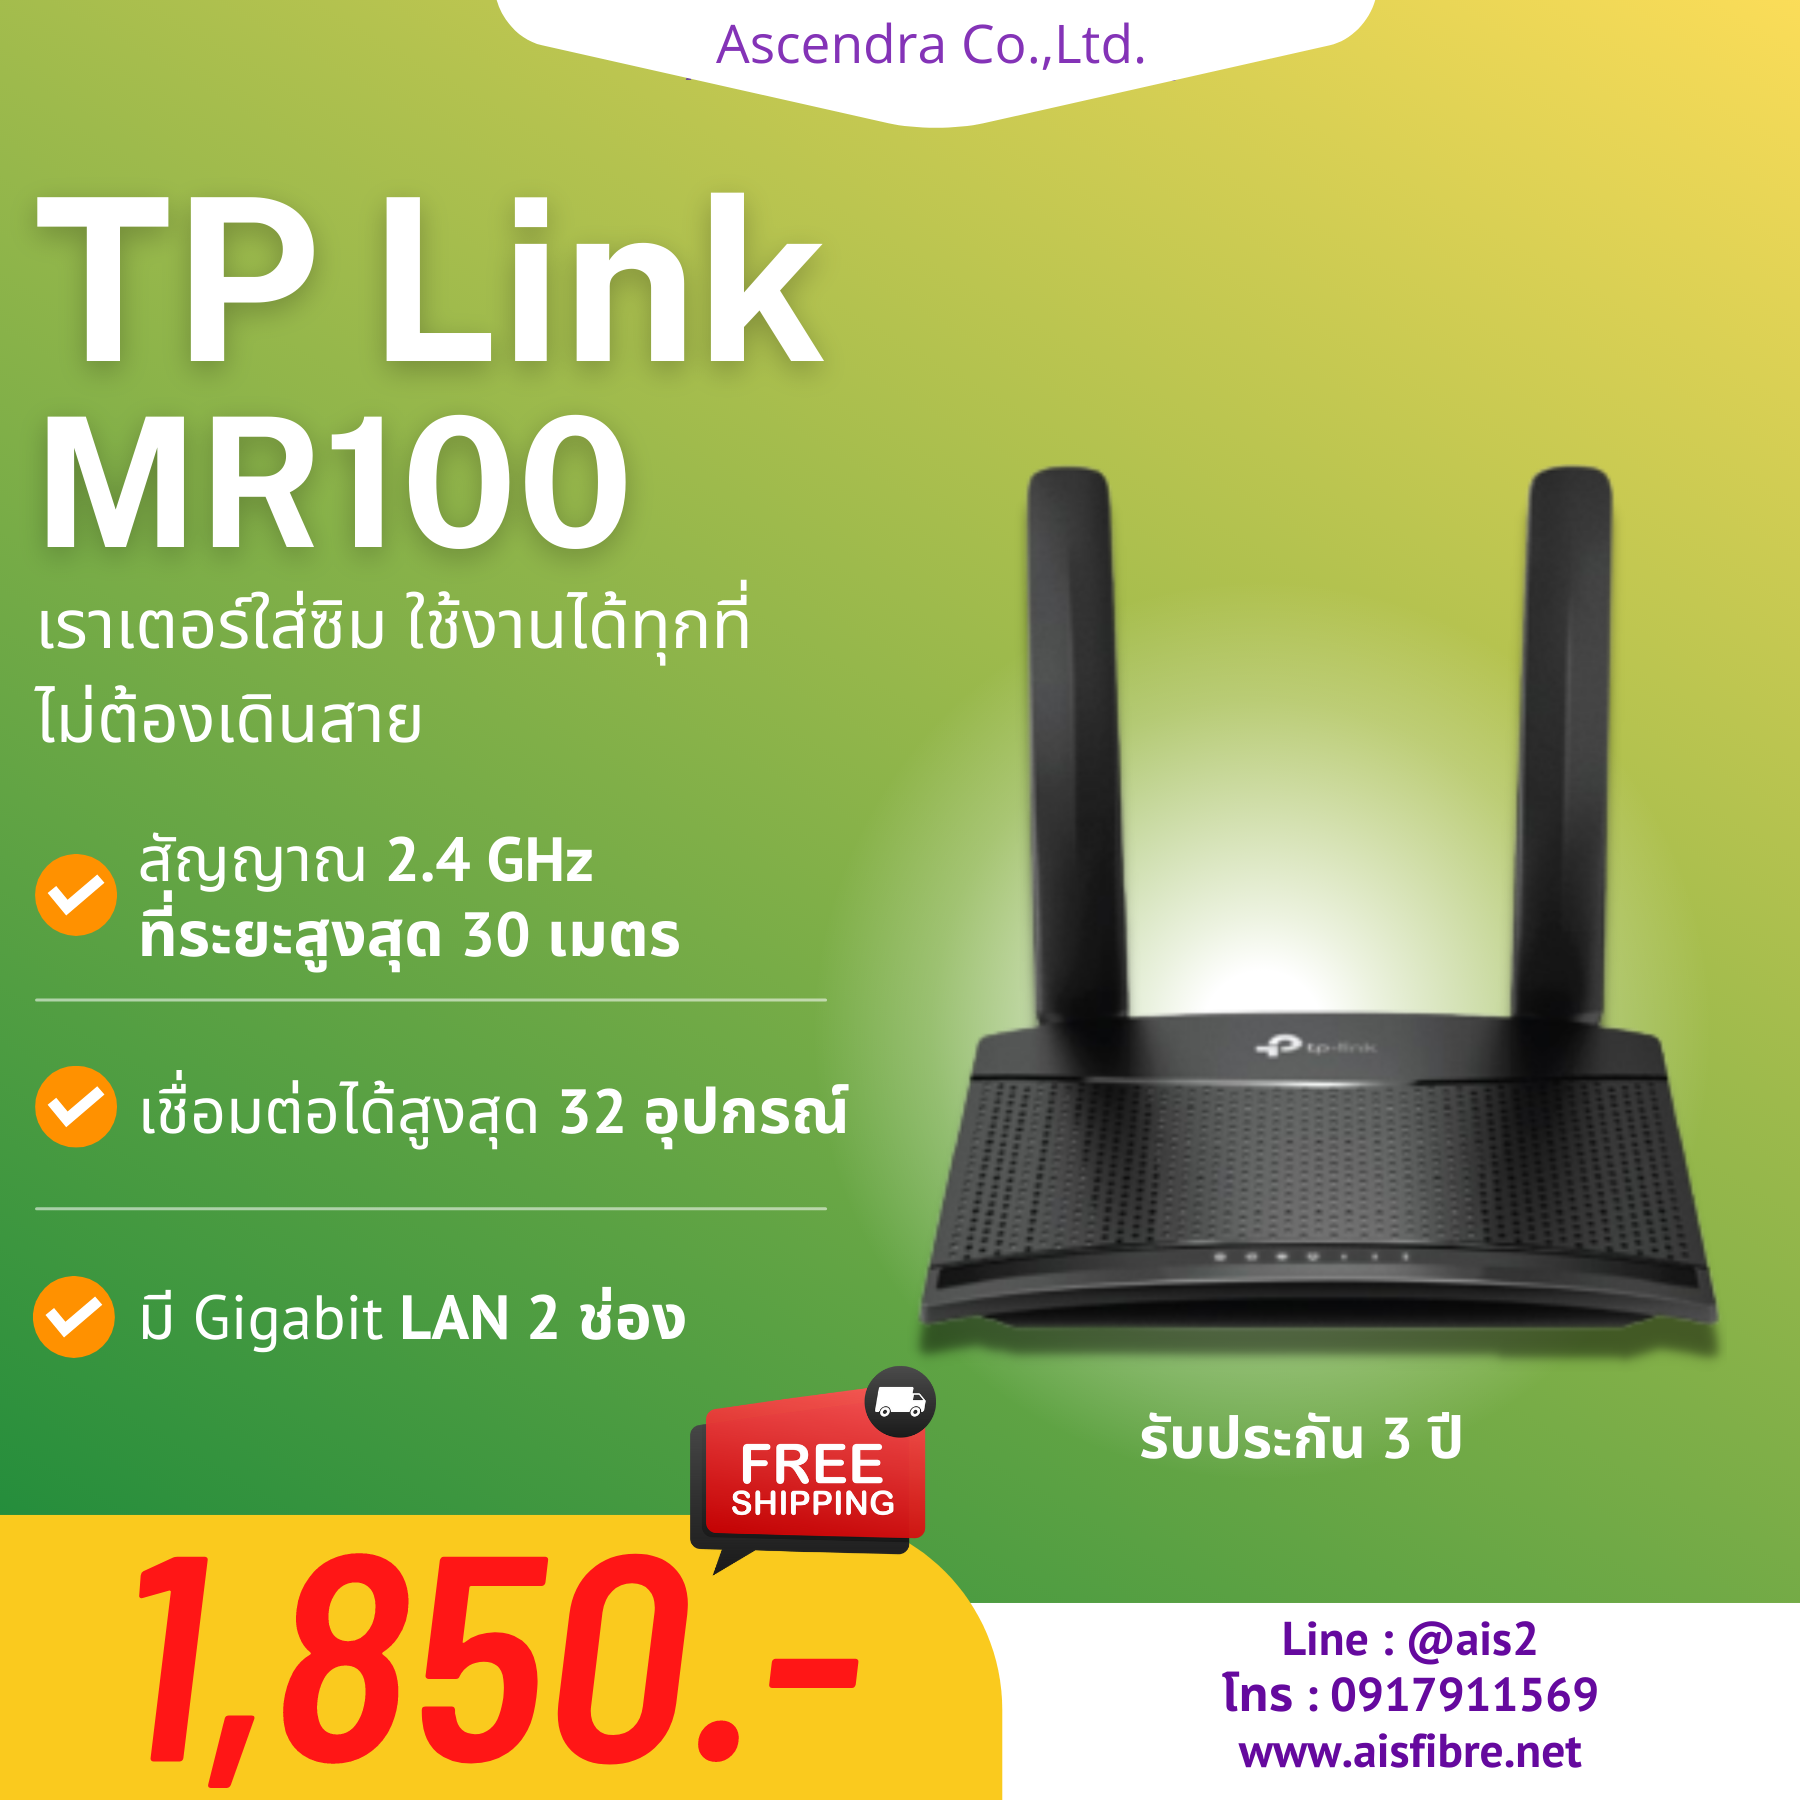 TP Link MR100